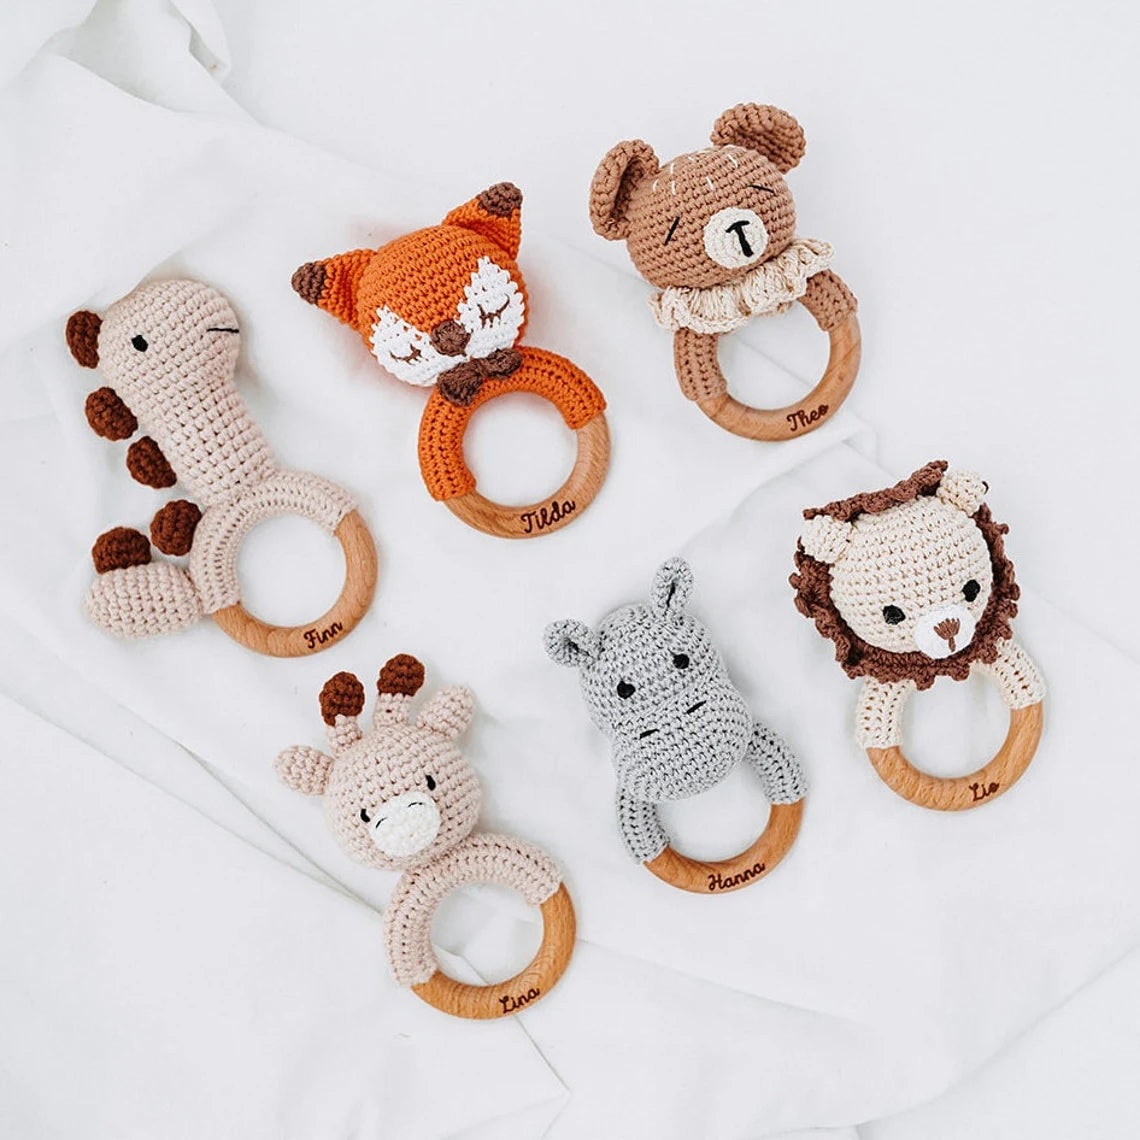 Babyrassel personalisiert - Giraffe, Fuchs, Löwe, Nilpferd